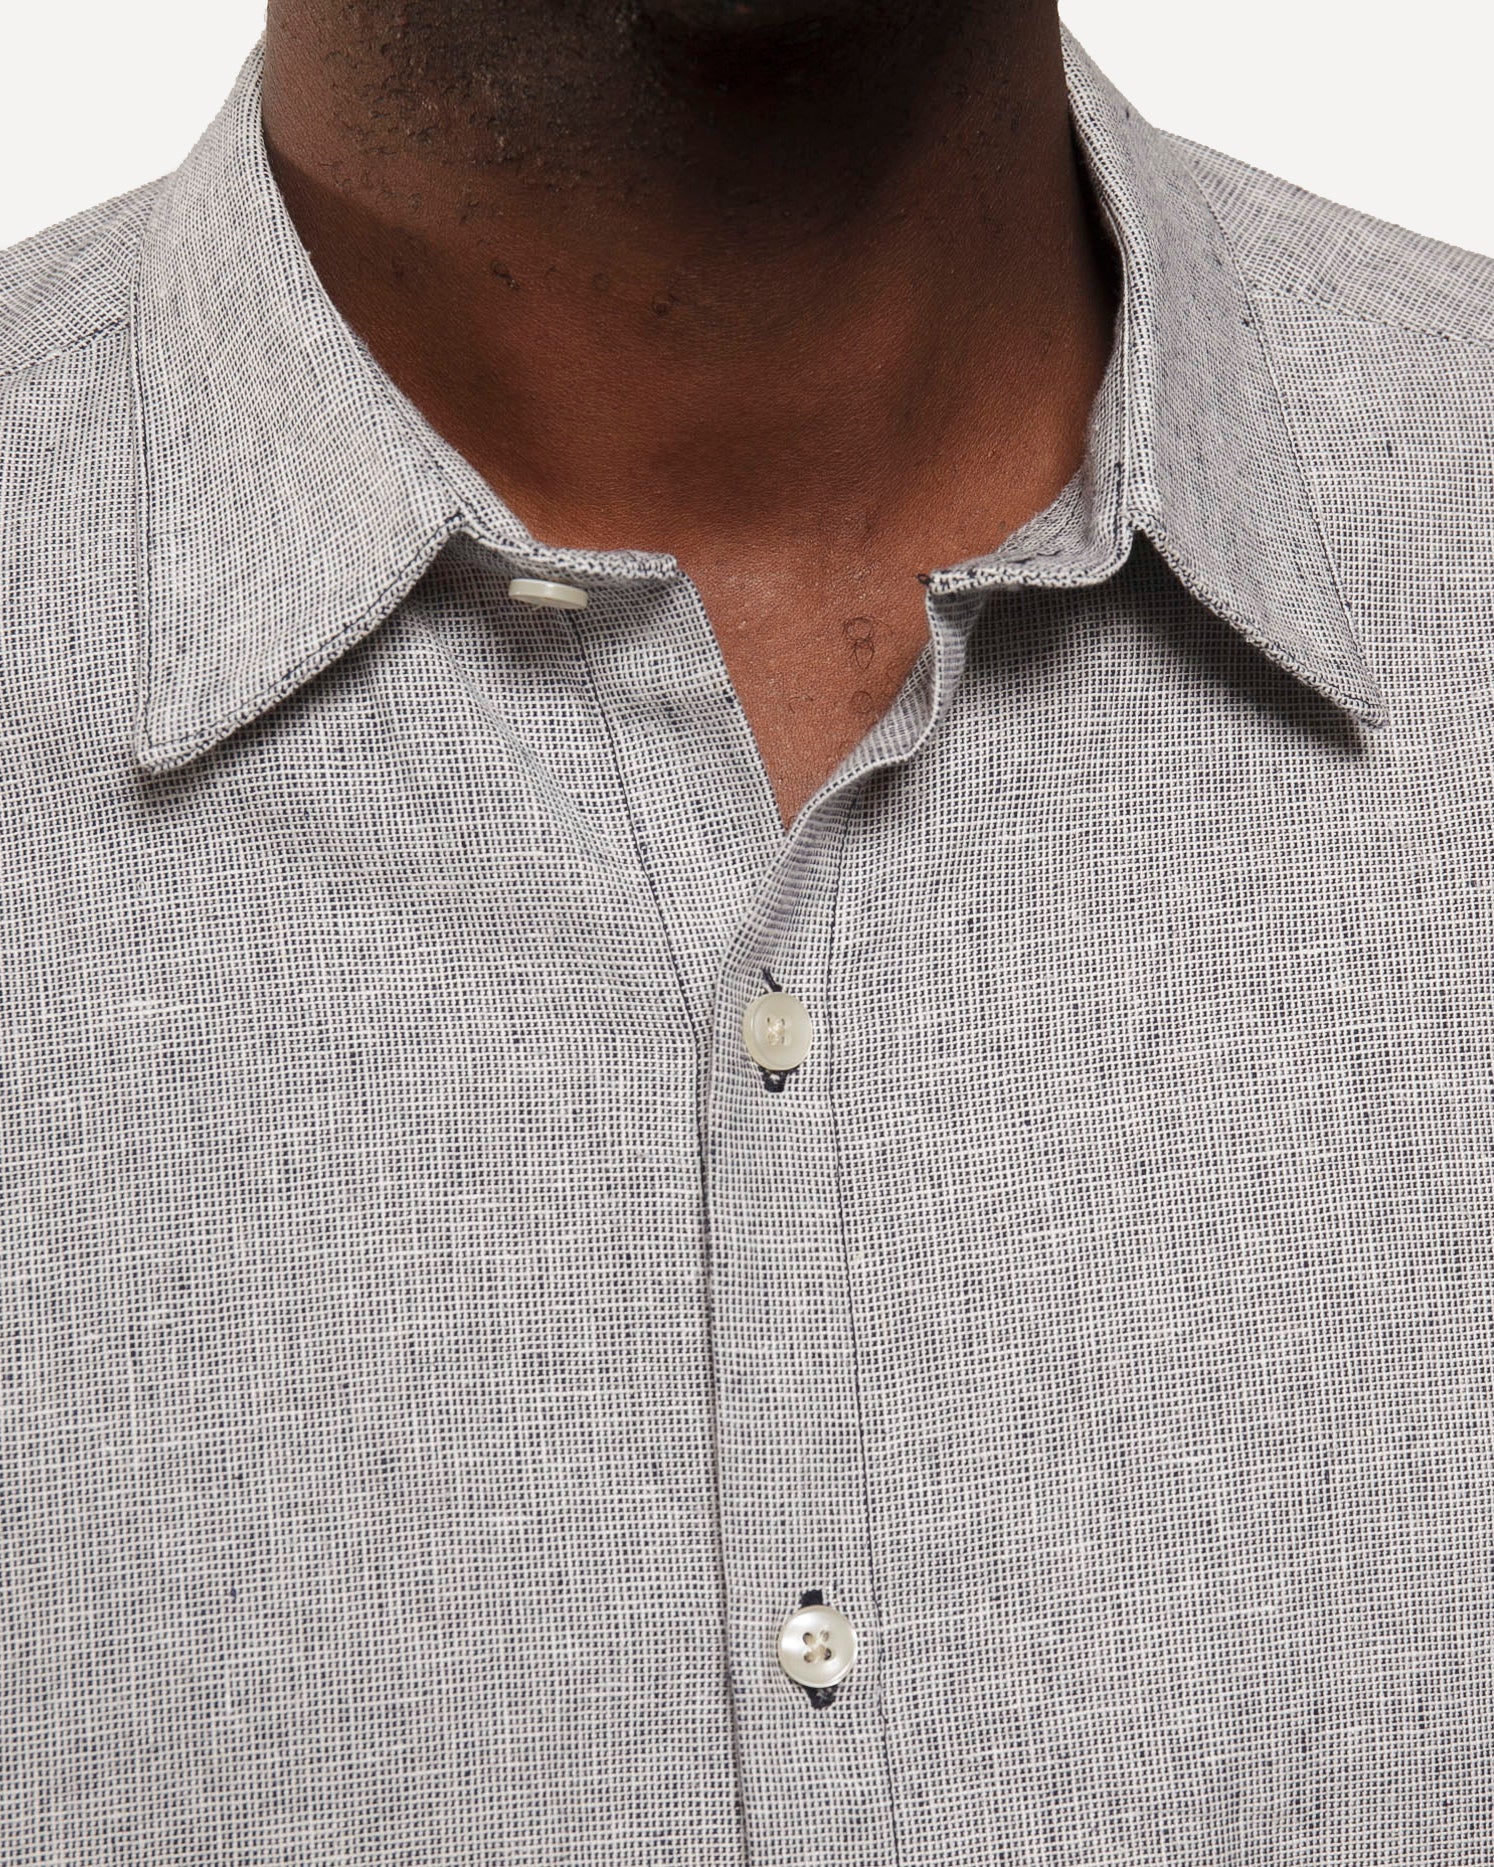 Short Sleeve Dylan Shirt | Indigo Linen Hatches